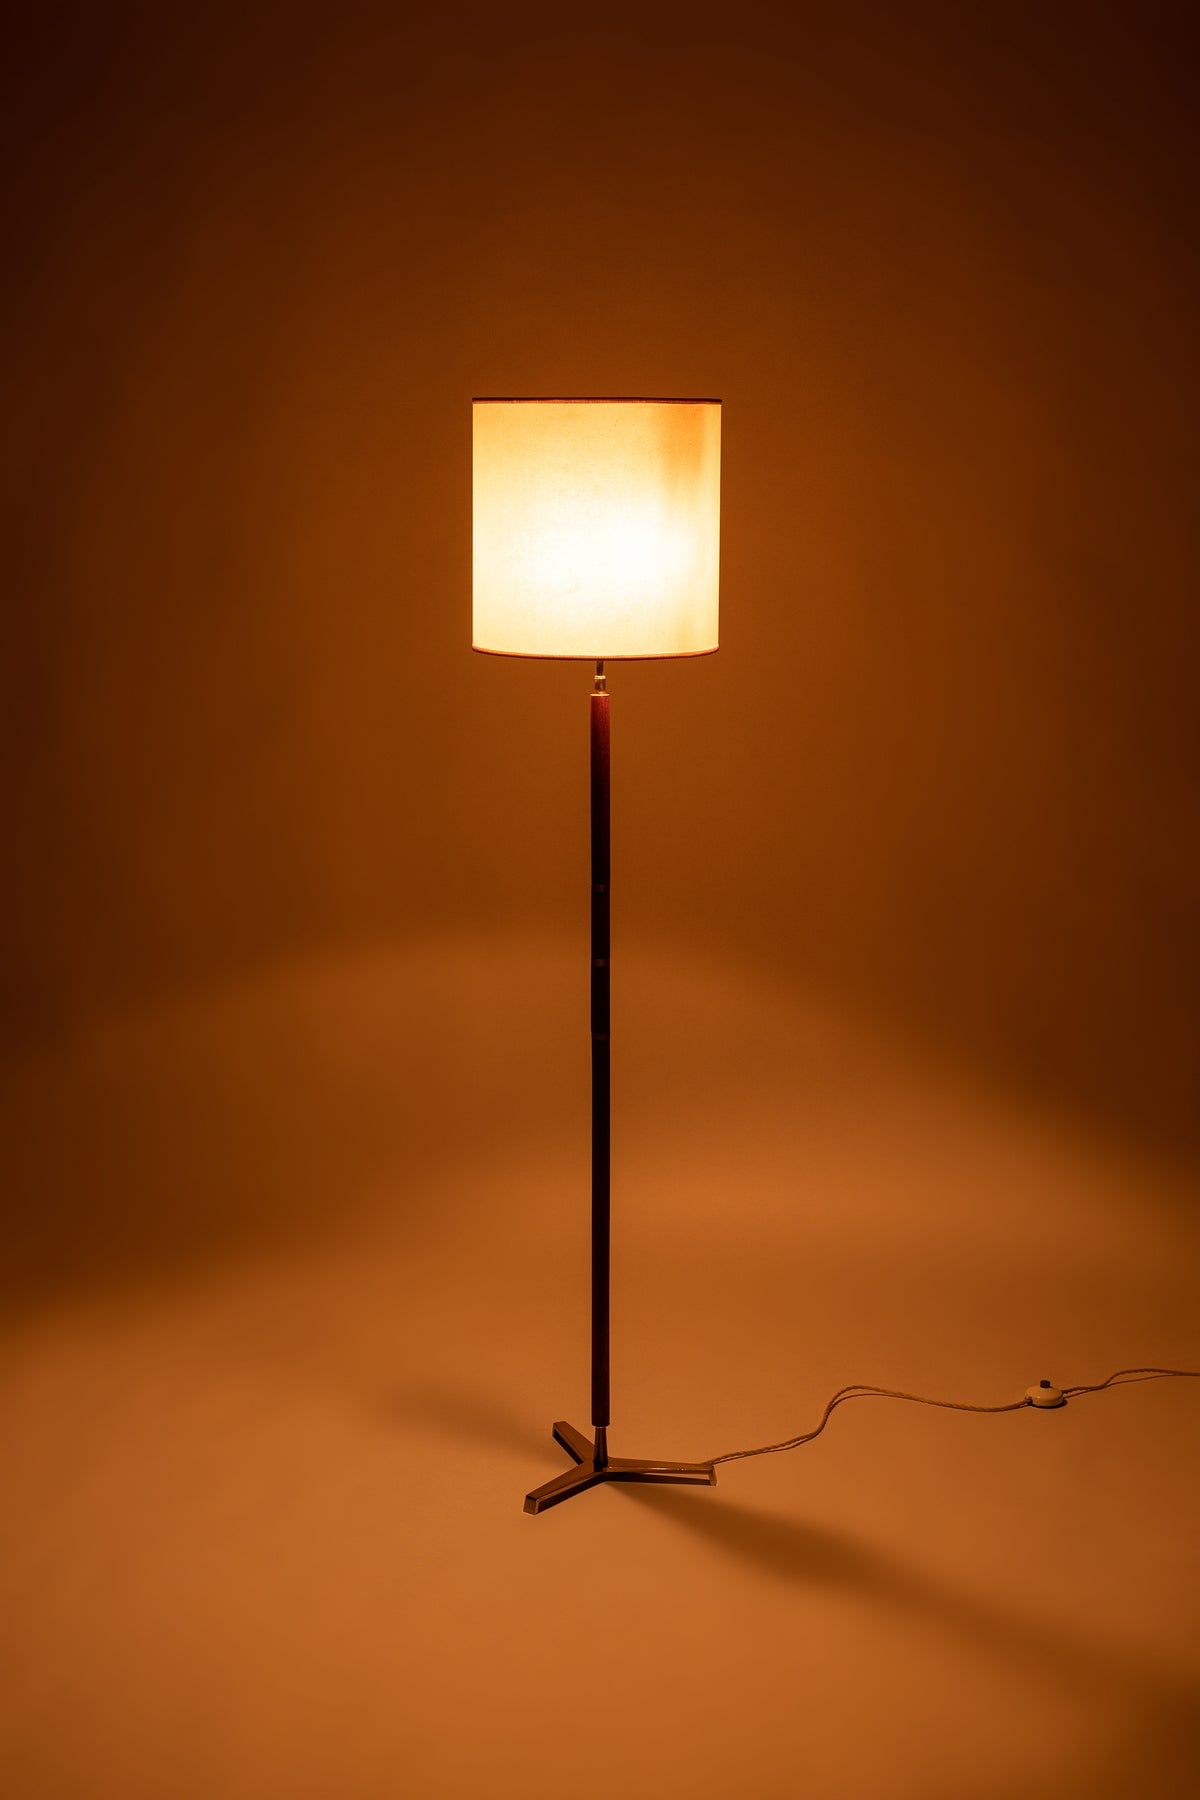 Mégal Stehlampe, Teak und Messing, Schweiz, 60er